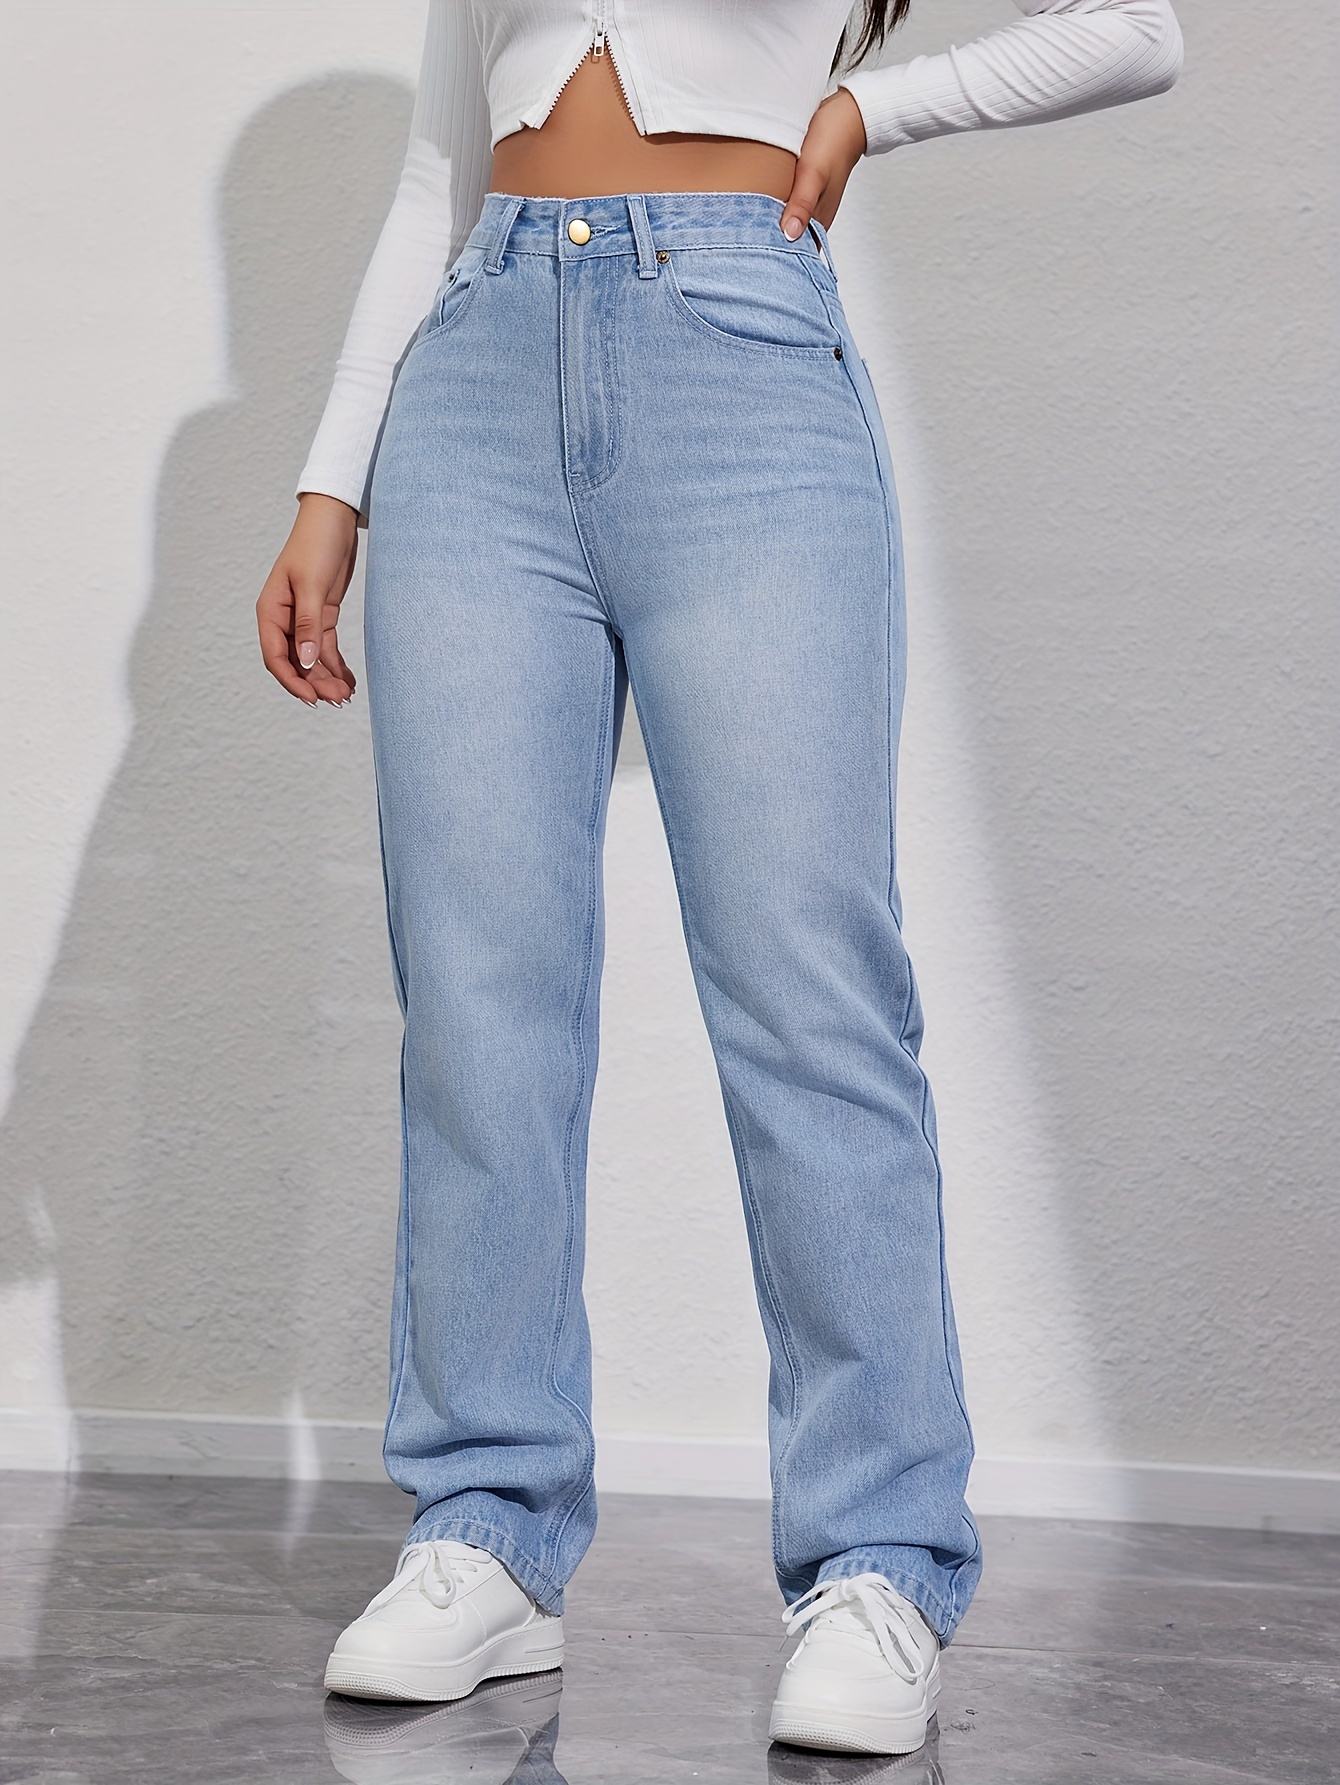 Jeans Retos Da Moda Com Estampa De Desenho Animado, Calças Jeans Com Bolsos  Inclinados E Soltos, Jeans Femininos E Roupas